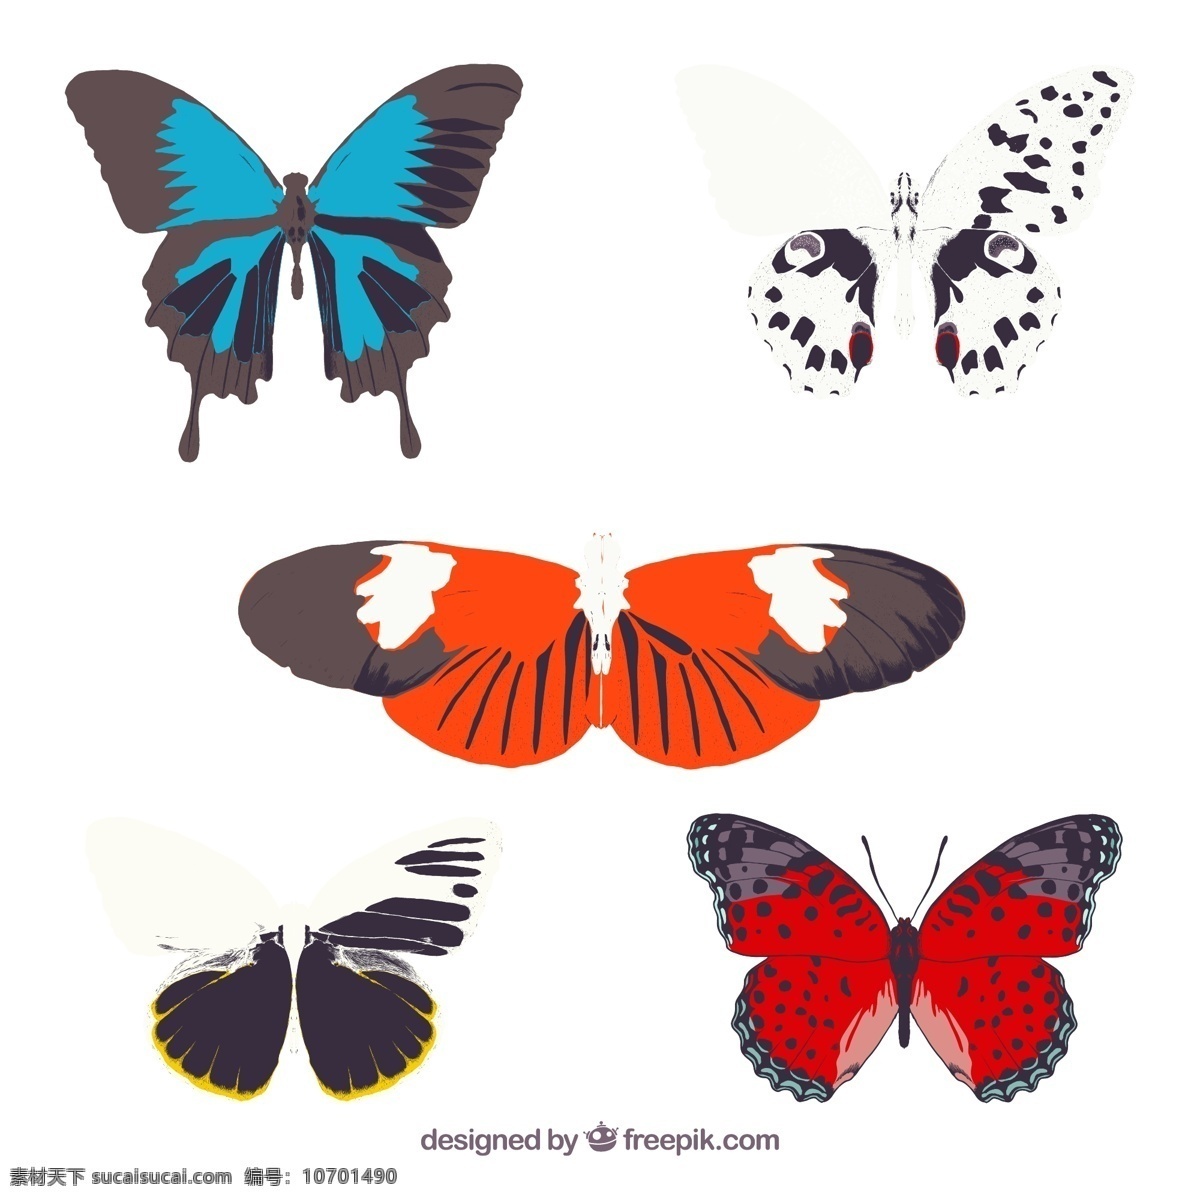 蝴蝶 矢量 昆虫 矢量图 格式 psd素材 高清图片